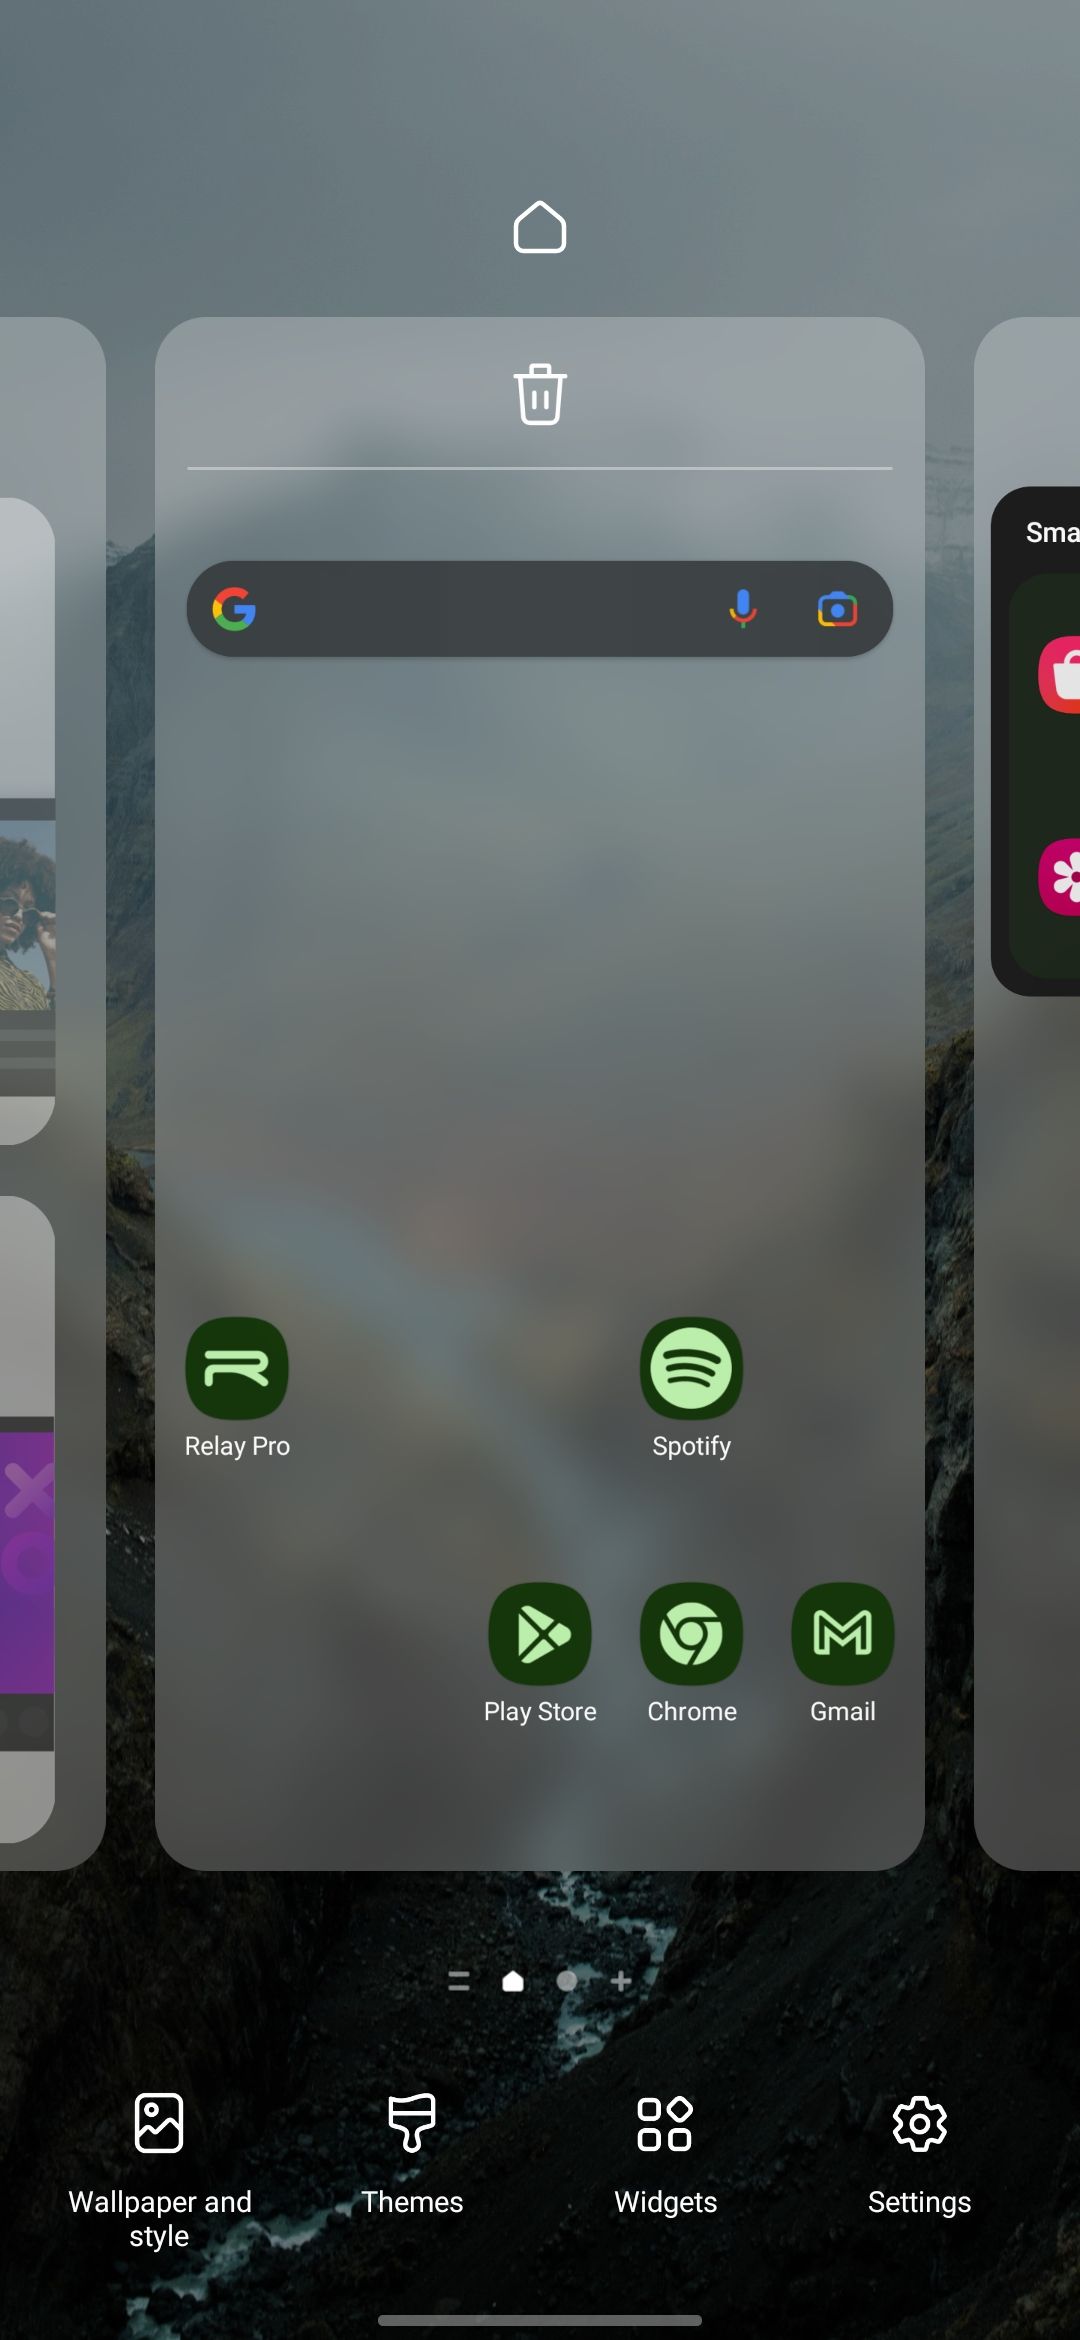 Captura de tela da tela inicial do One UI 5 com menu inferior